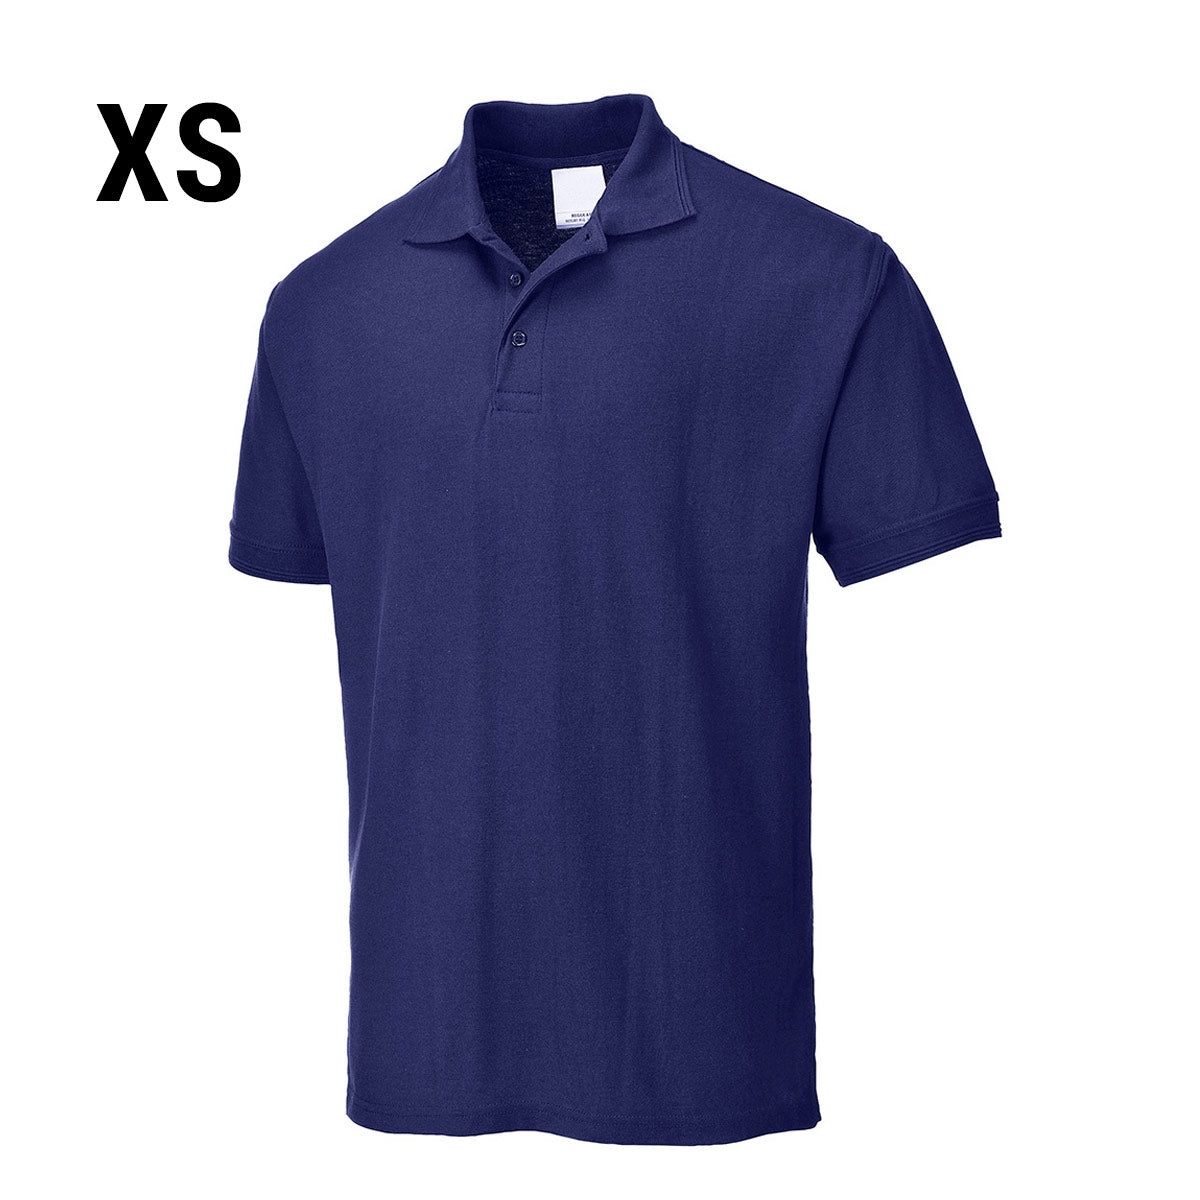 Polo shirt til mænd - Navy - Størrelse: XS